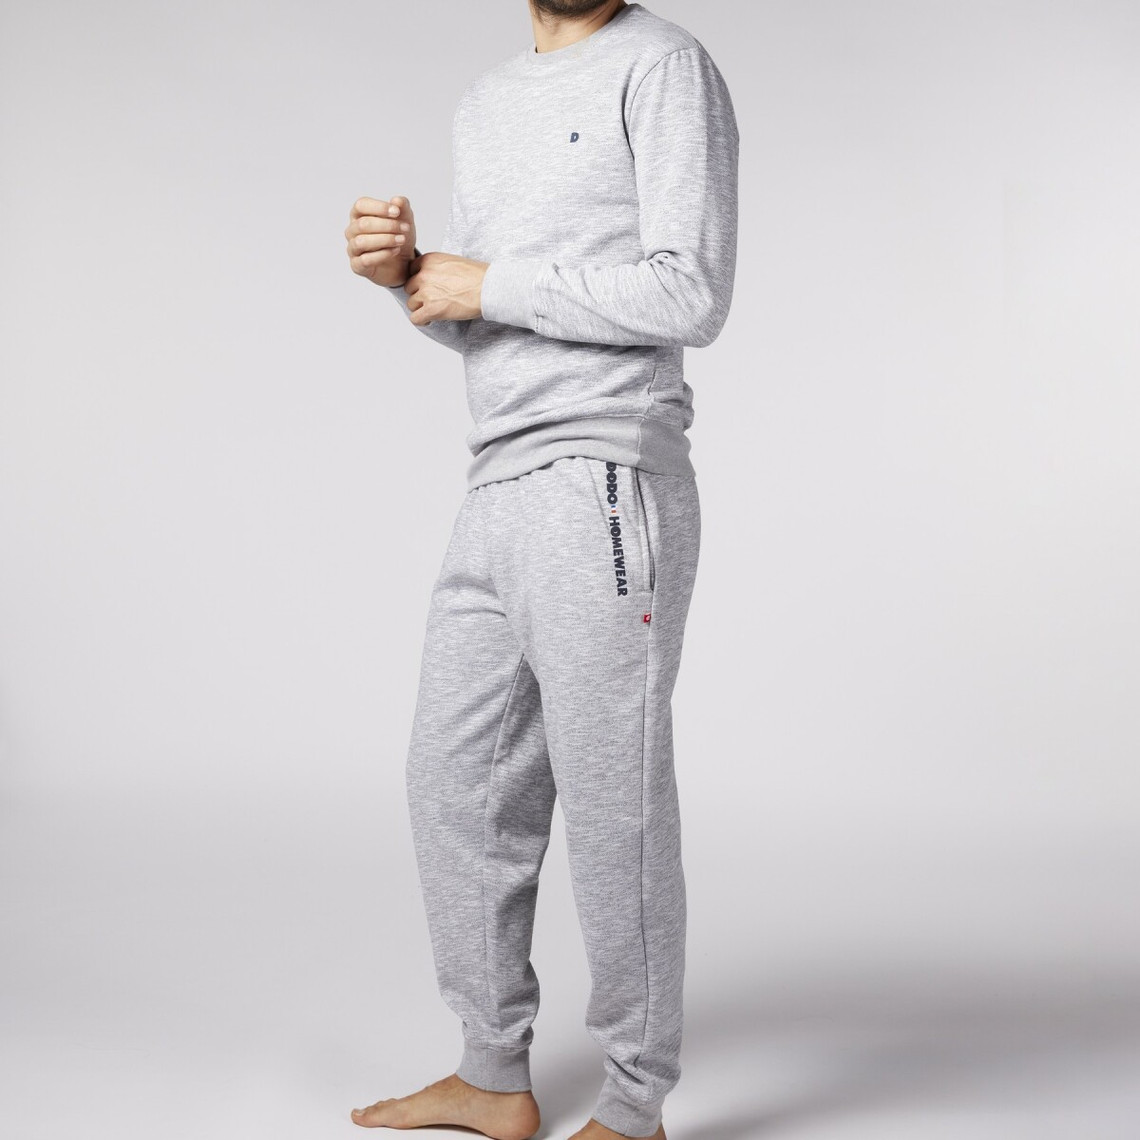 Pyjama Long homme en Coton - Gris Chiné - Dodo Homewear